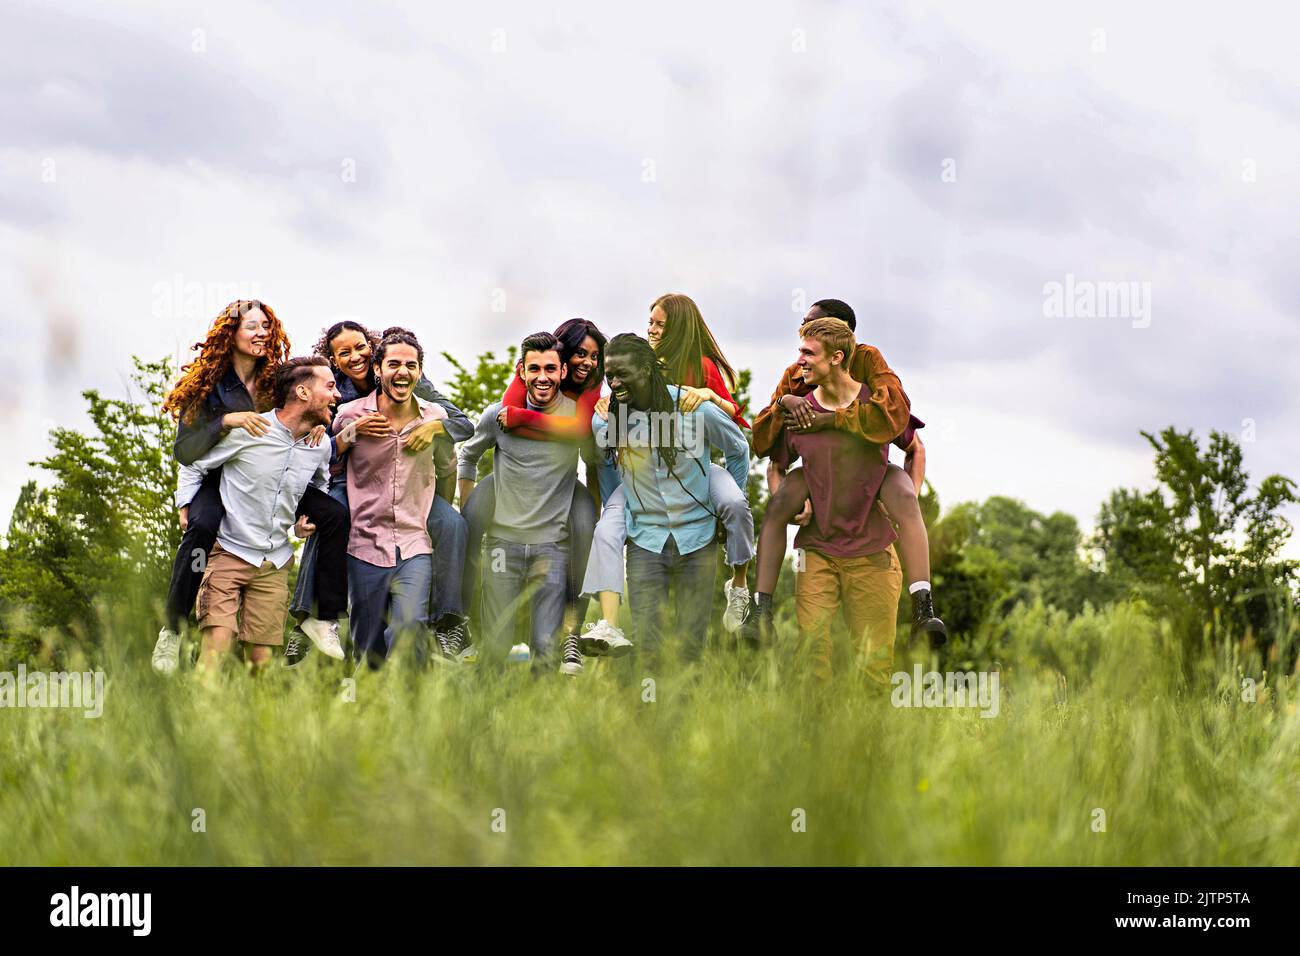 Eine Gruppe multiethnischer junger, fröhlicher Menschen, die zusammen auf dem Land spazieren und Huckepack spielen - glückliche Freunde, die Spaß haben, sich in der weeke zu treffen Stockfoto